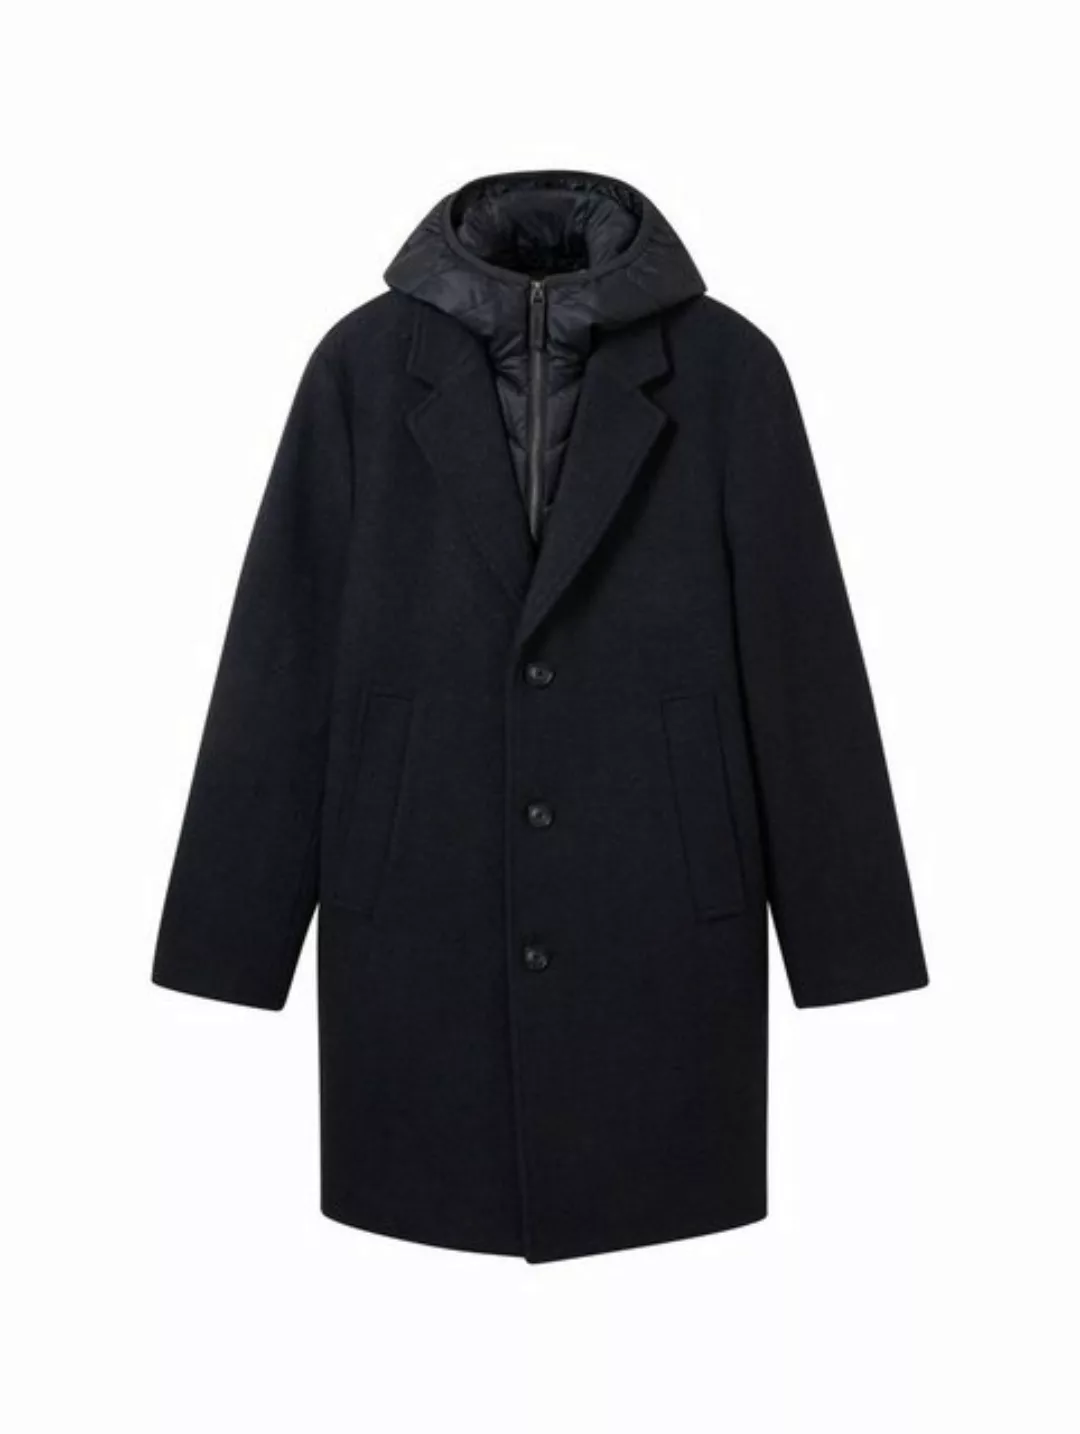 TOM TAILOR Wollmantel wool coat 2 in 1 wit günstig online kaufen